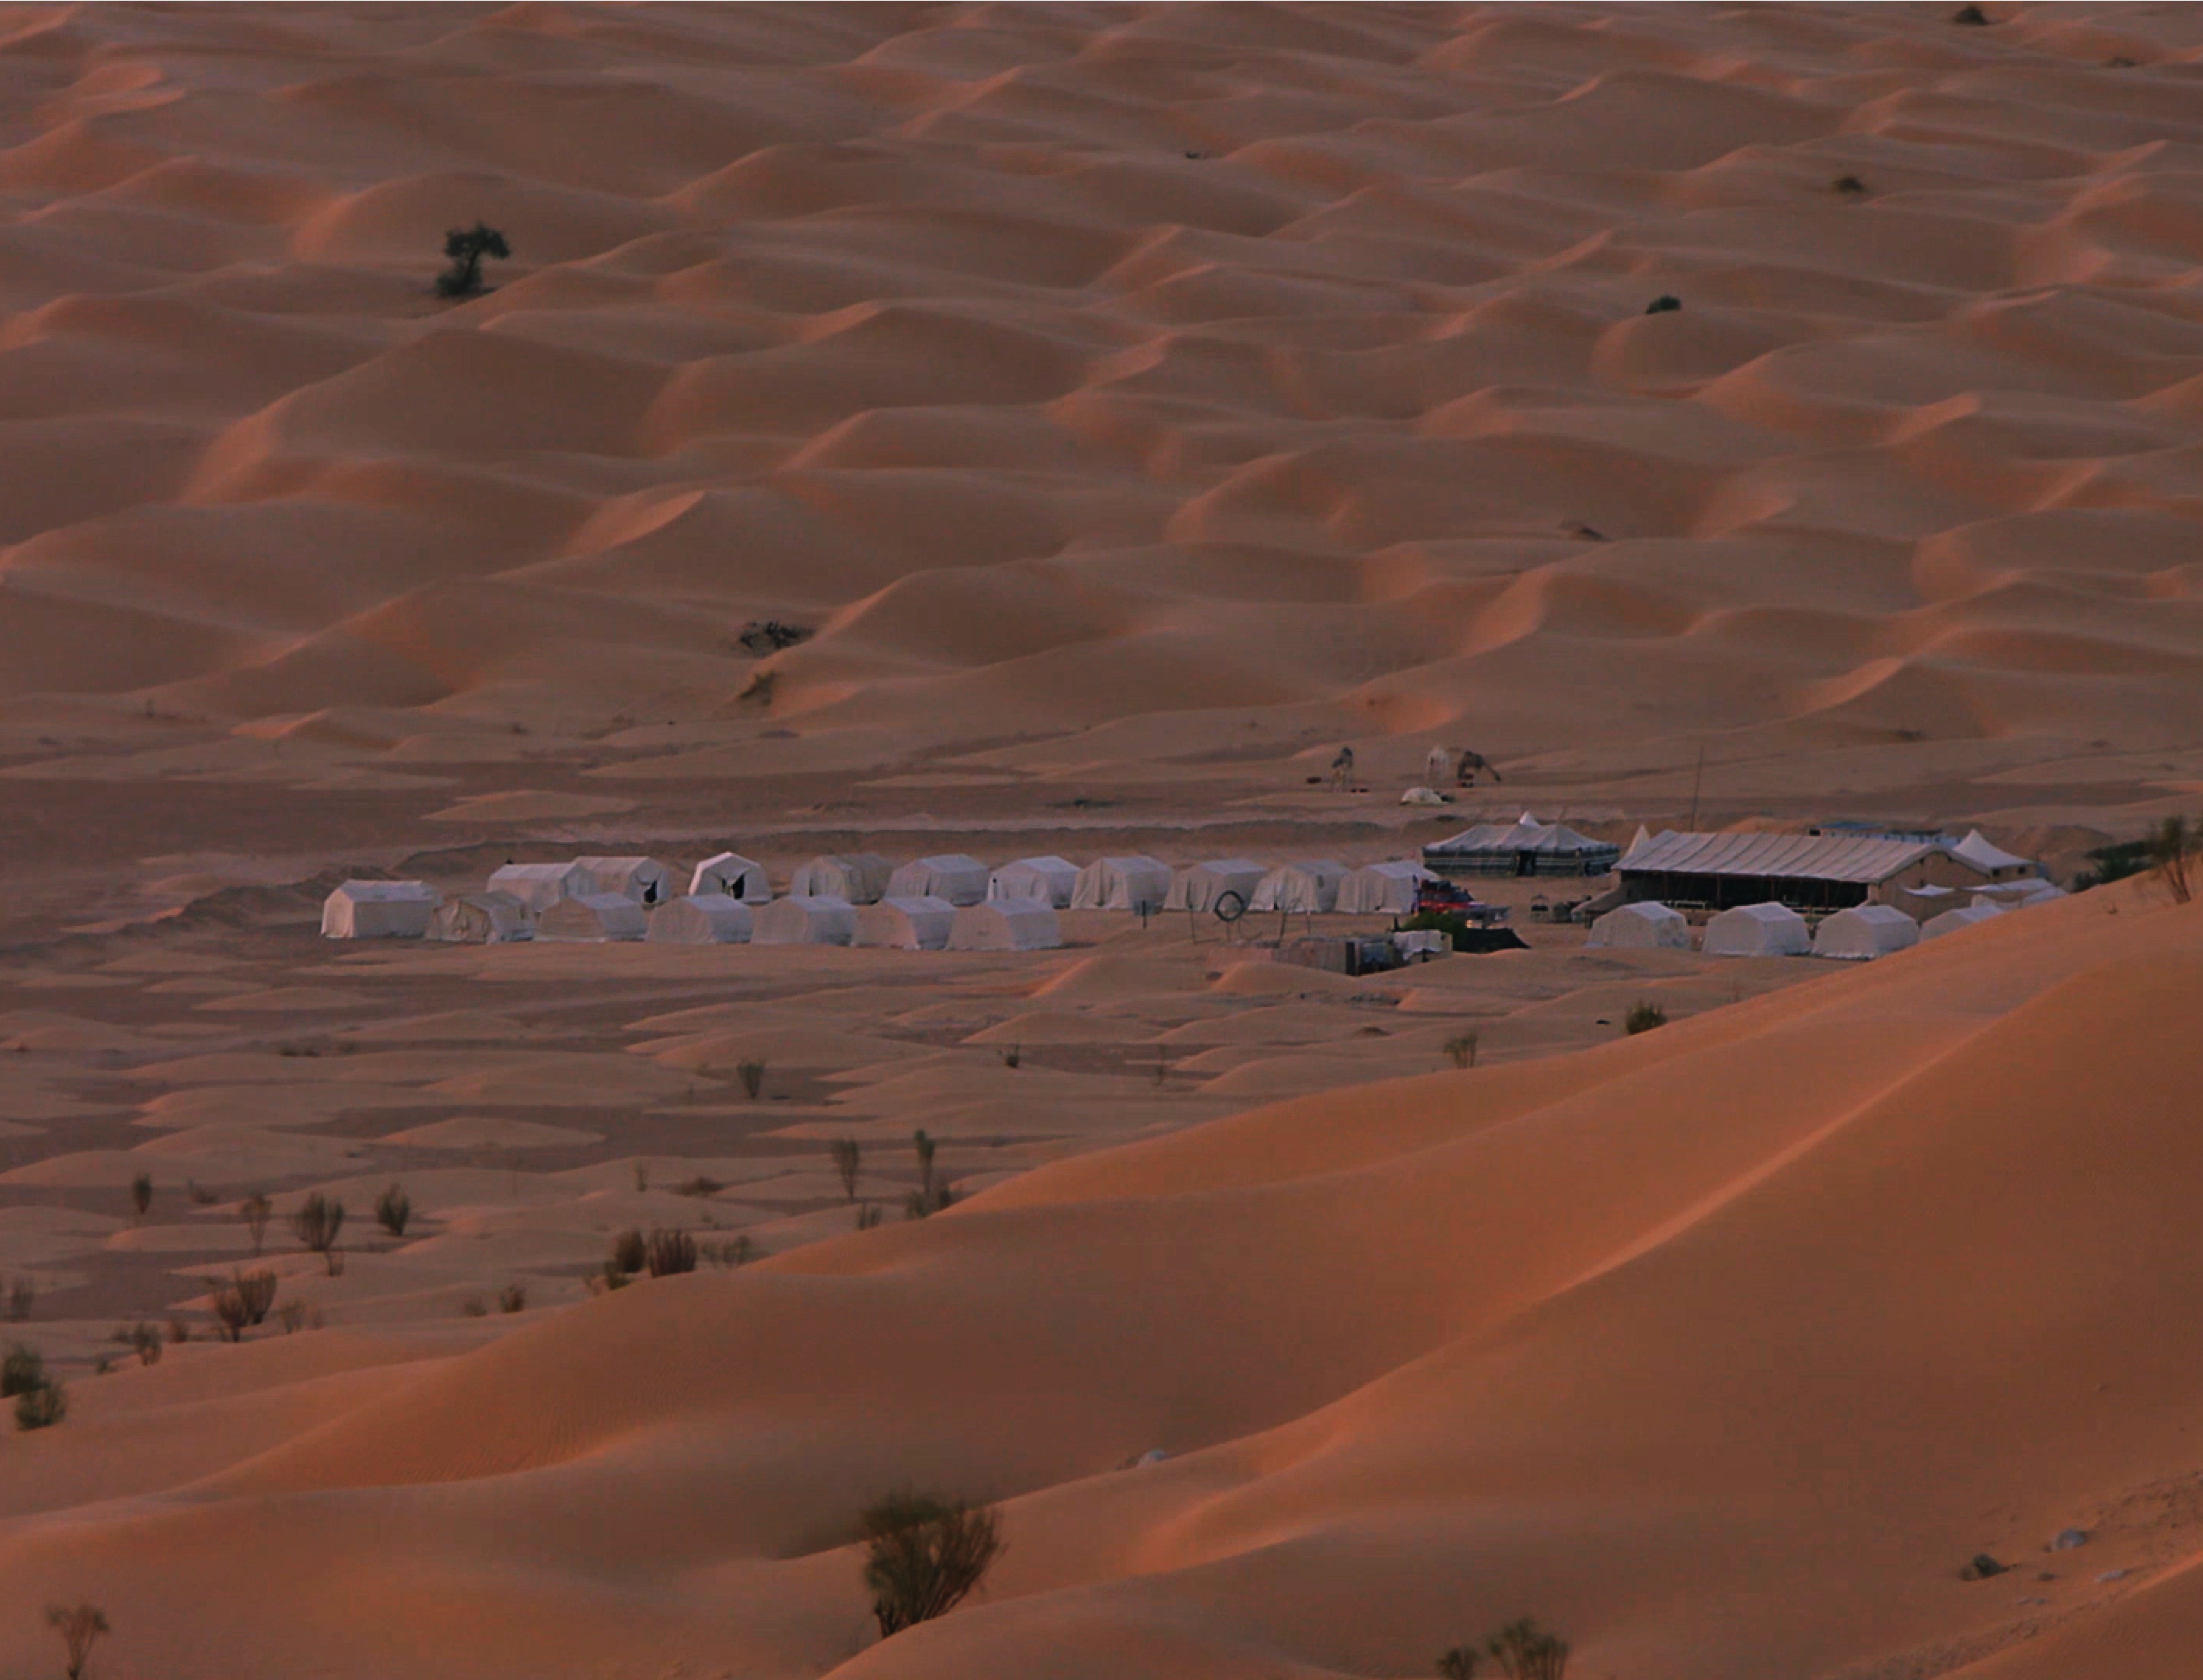 A campsite in the Tunisian desert at dawn